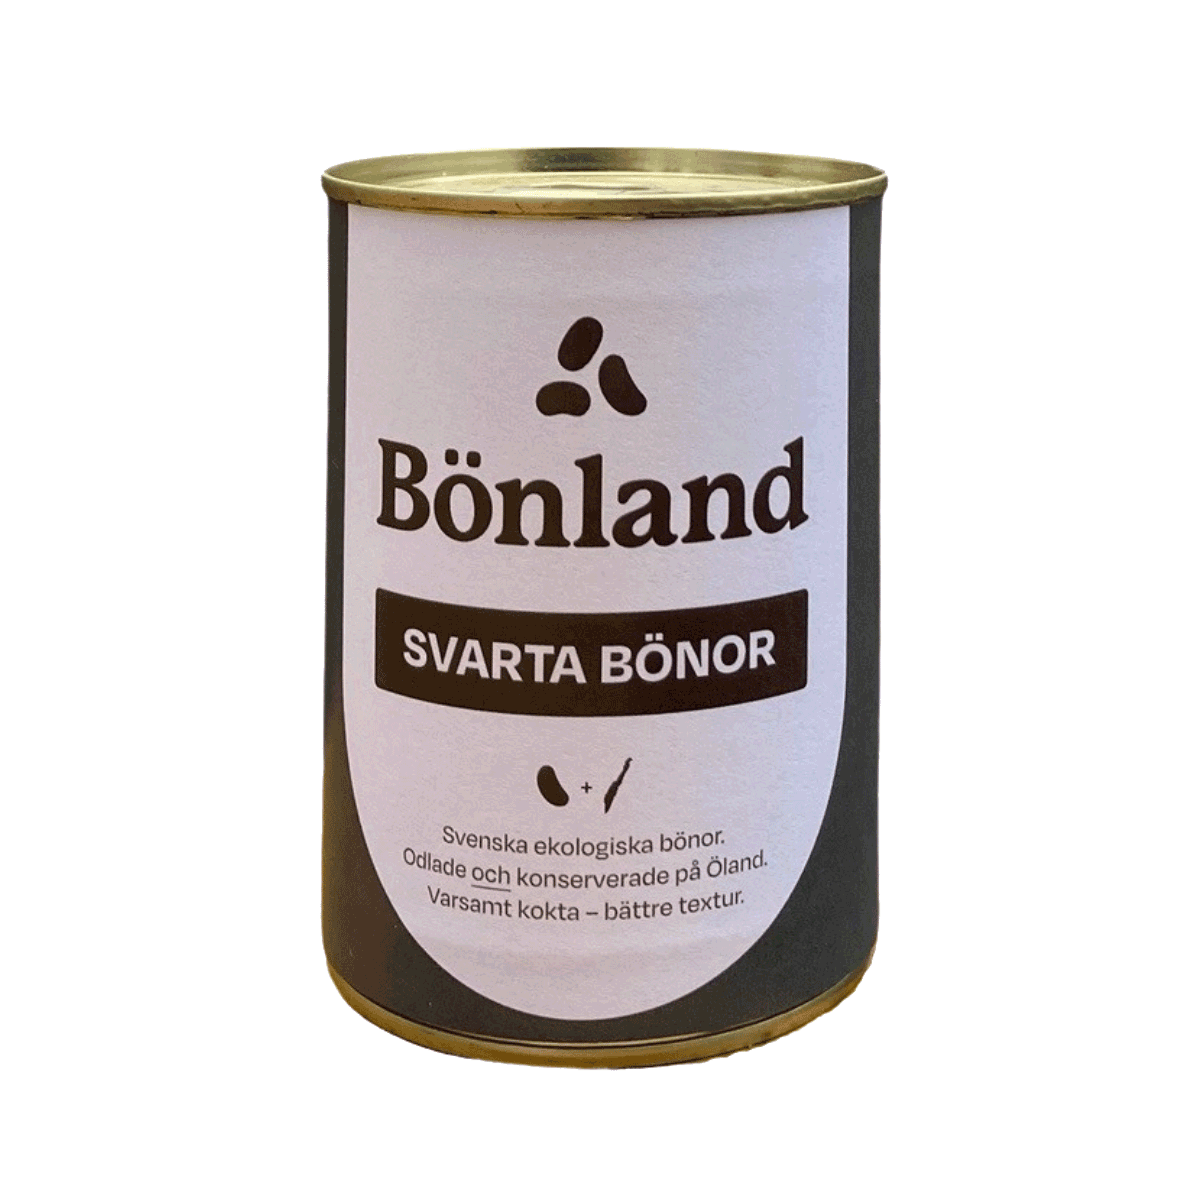 Bönland's Svarta bönor'